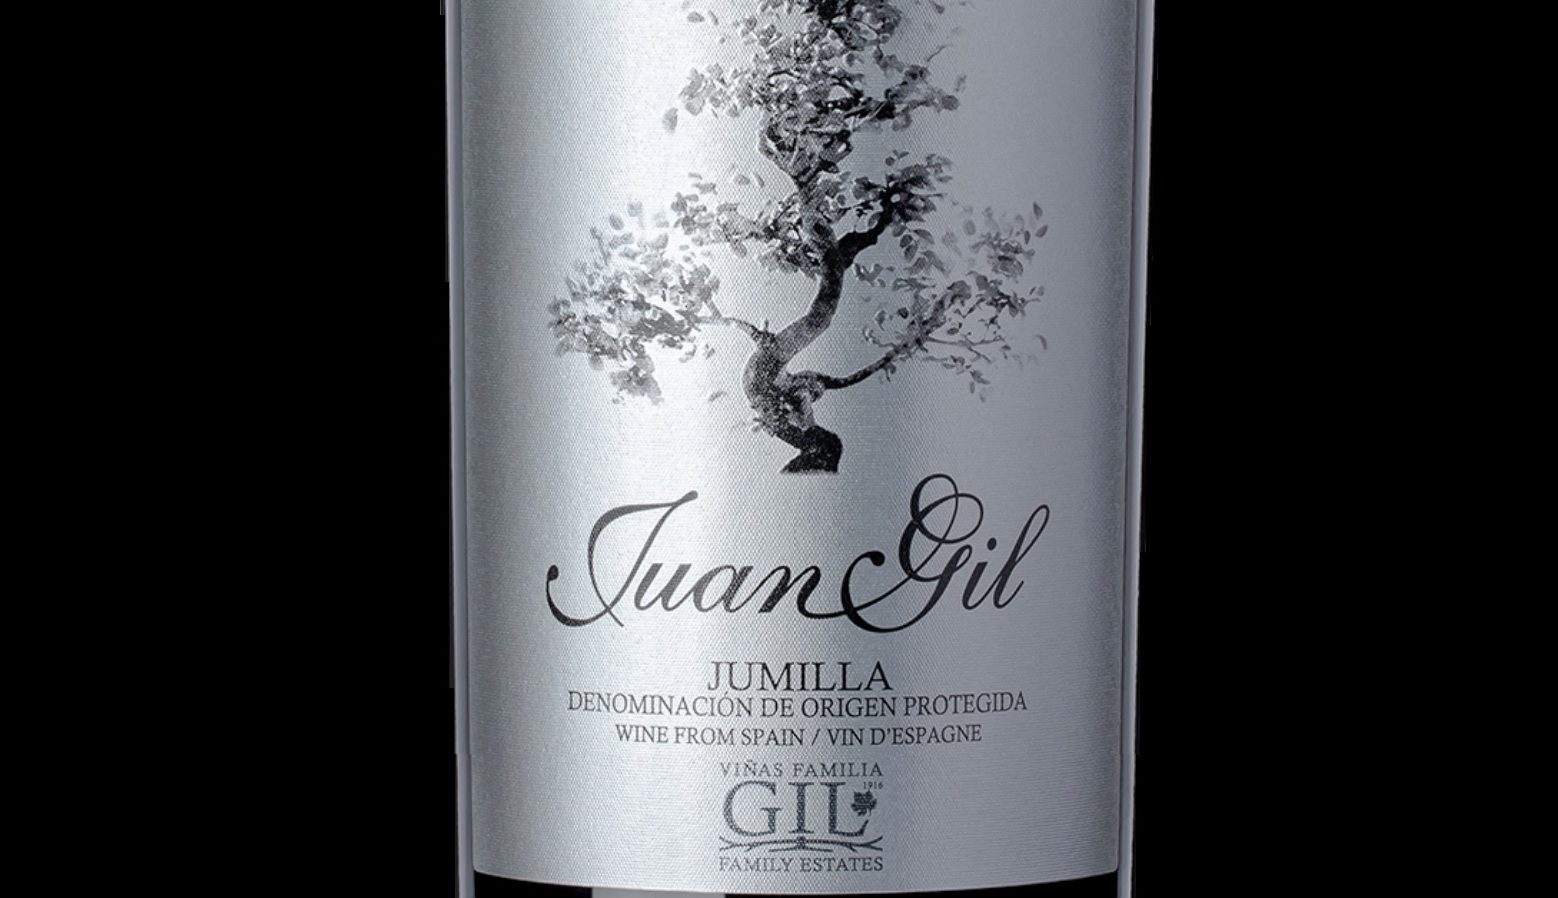 Juan Gil etiqueta plata es uno de los Mejores Vinos y Espirituosos de España, según la AEPEV